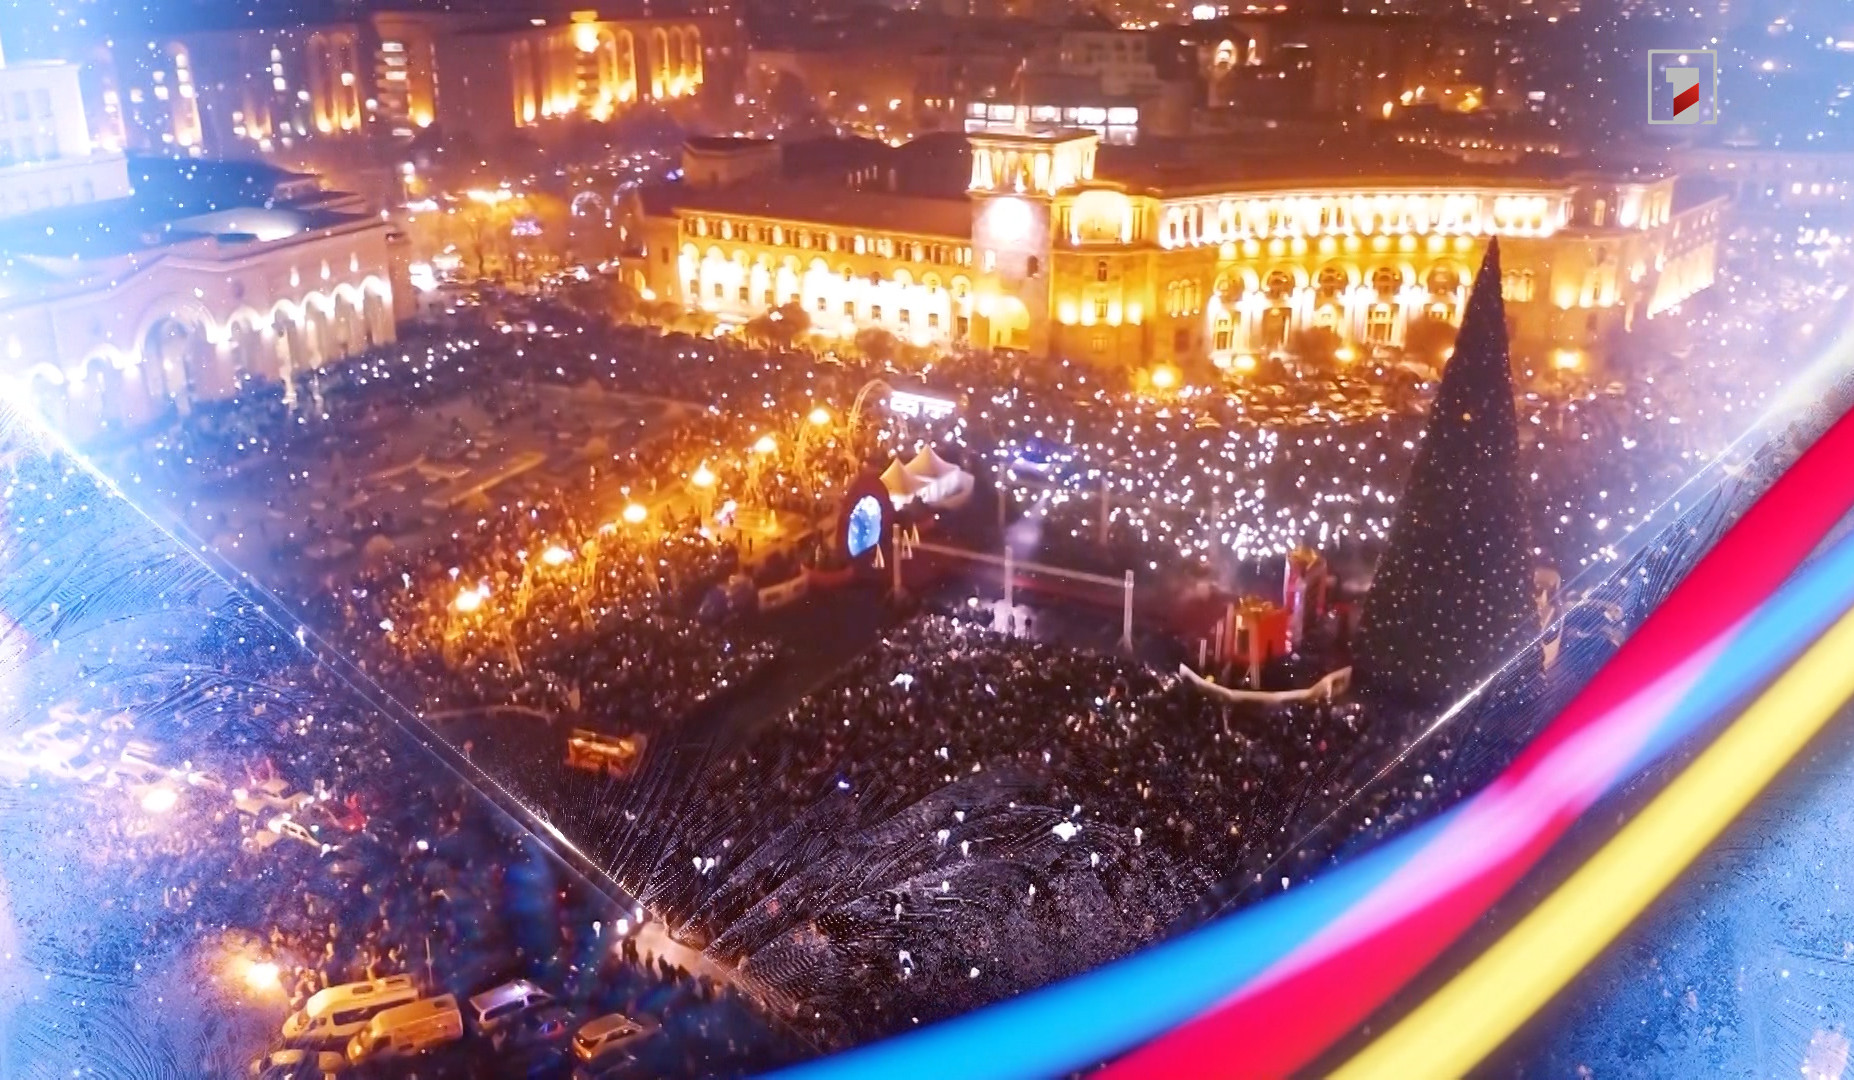 Ամանորը՝ եվրատեսիլյան շնչով. դեկտեմբերի 5-ին՝ ժամը 19:00-ին, Հանրապետության հրապարակում կվառվեն Հայաստանի գլխավոր տոնածառի լույսերը